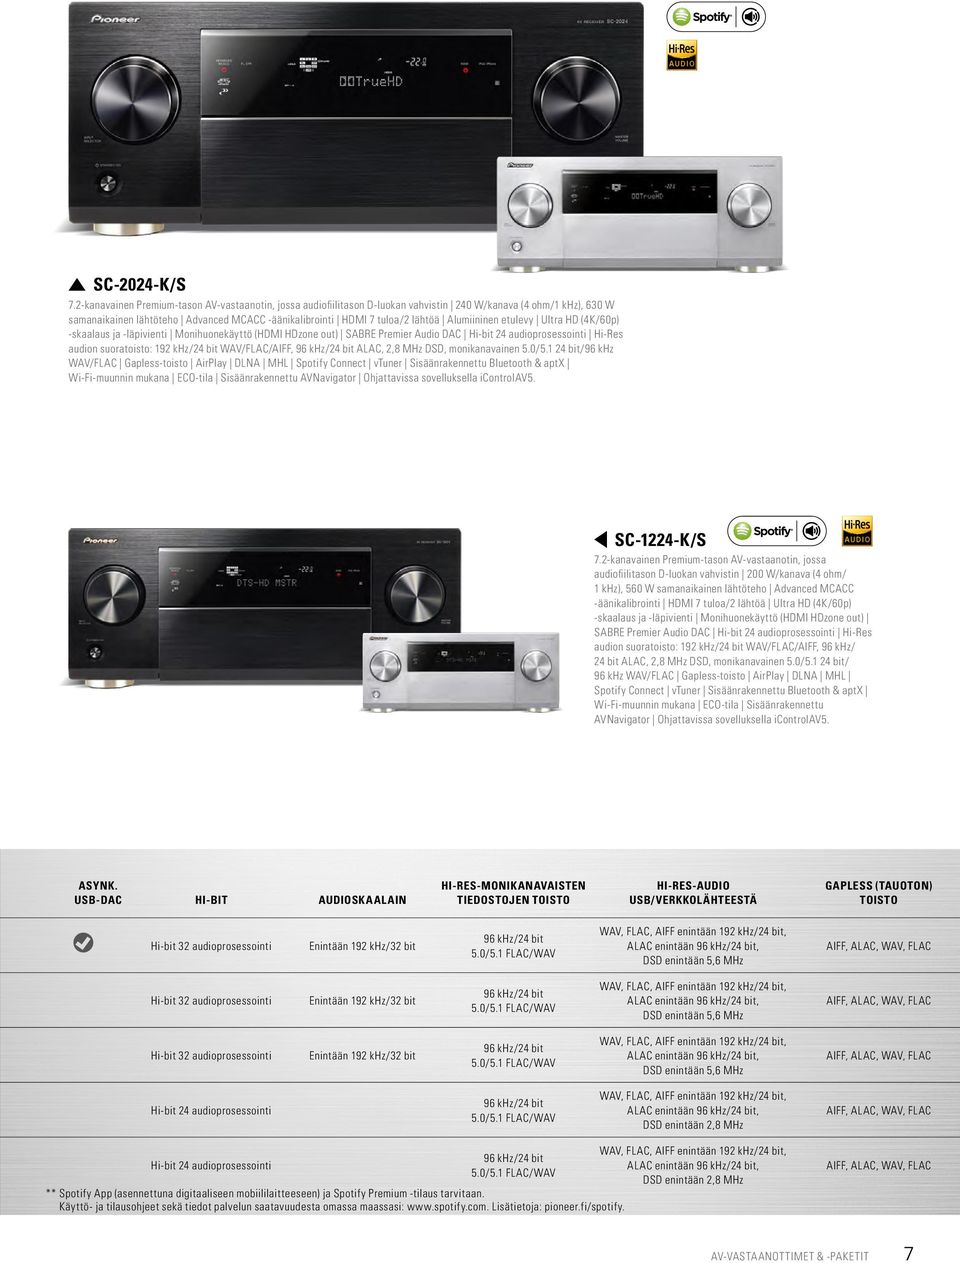 Alumiininen etulevy Ultra HD (4K/60p) -skaalaus ja -läpivienti Monihuonekäyttö (HDMI HDzone out) SABRE Premier Audio DAC Hi-bit 24 audioprosessointi Hi-Res audion suoratoisto: 192 khz/24 bit